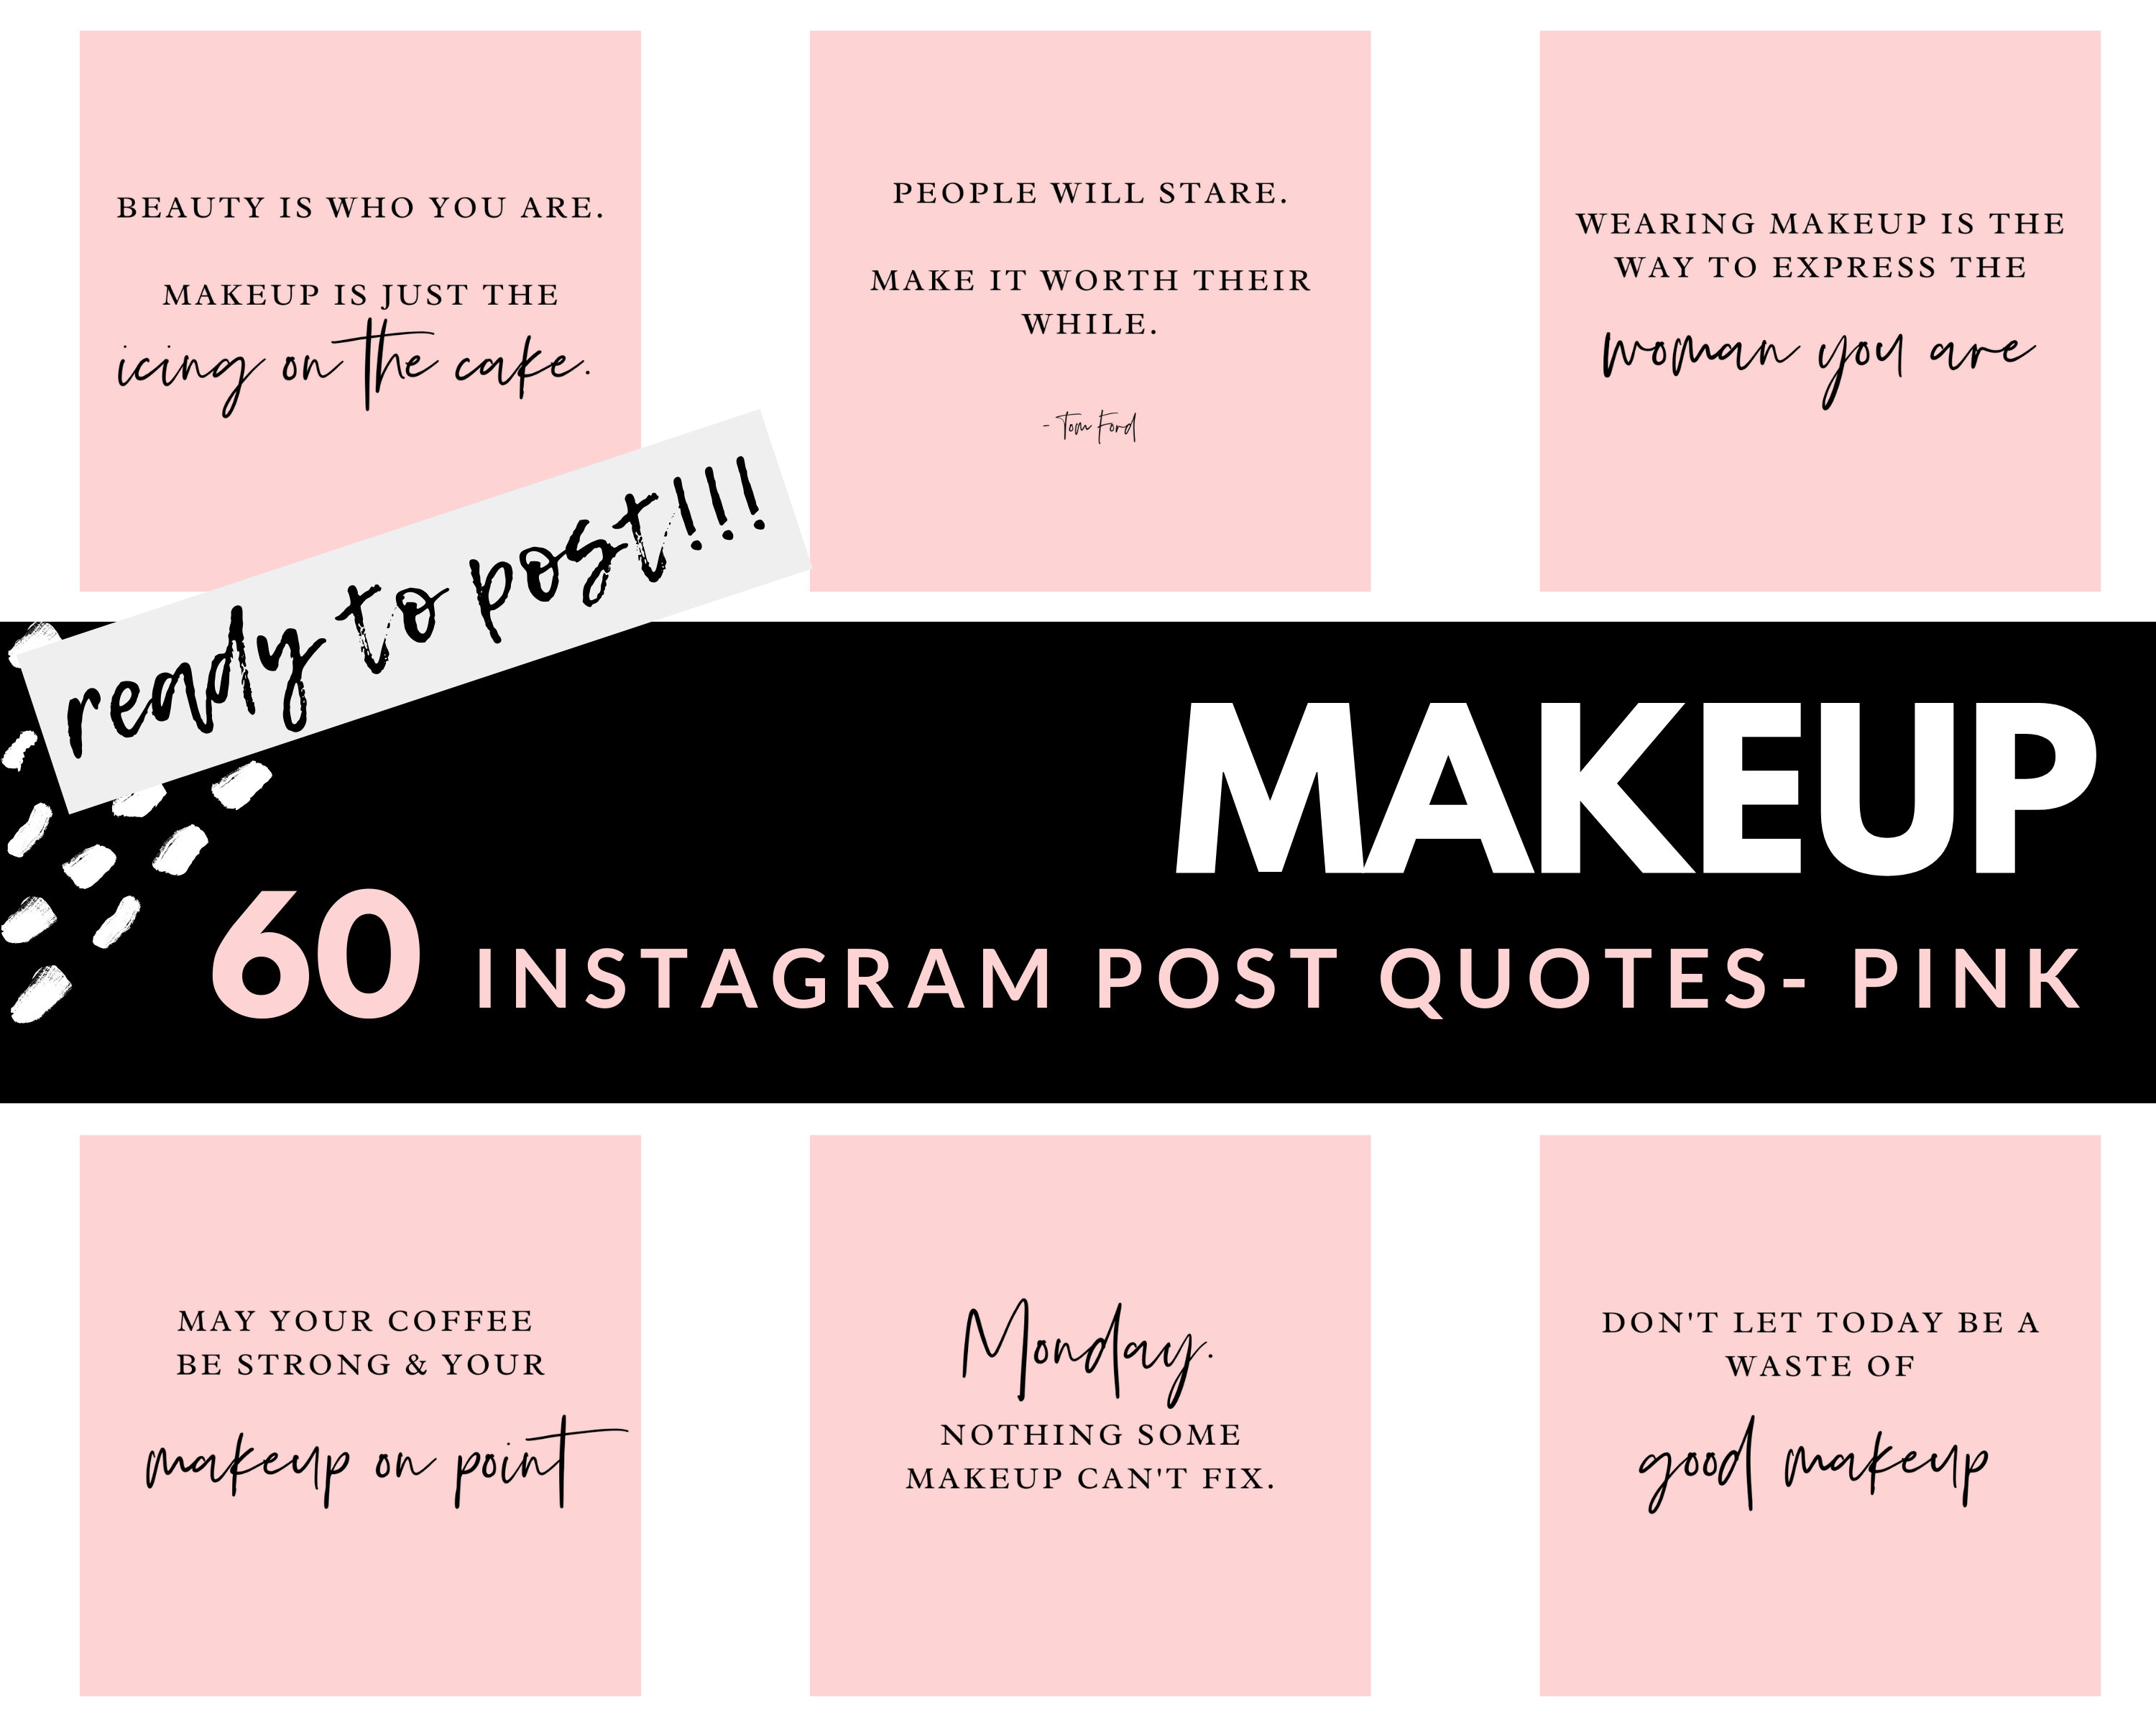 Makeup Posts là chủ đề không thể thiếu đối với bất kỳ cô gái nào yêu thích làm đẹp và tự tin. Bạn sẽ được chiêm ngưỡng những bức hình rực rỡ và chất lượng, khiến cho mỗi người phụ nữ đều muốn làm đẹp hơn và tỏa sáng hơn.